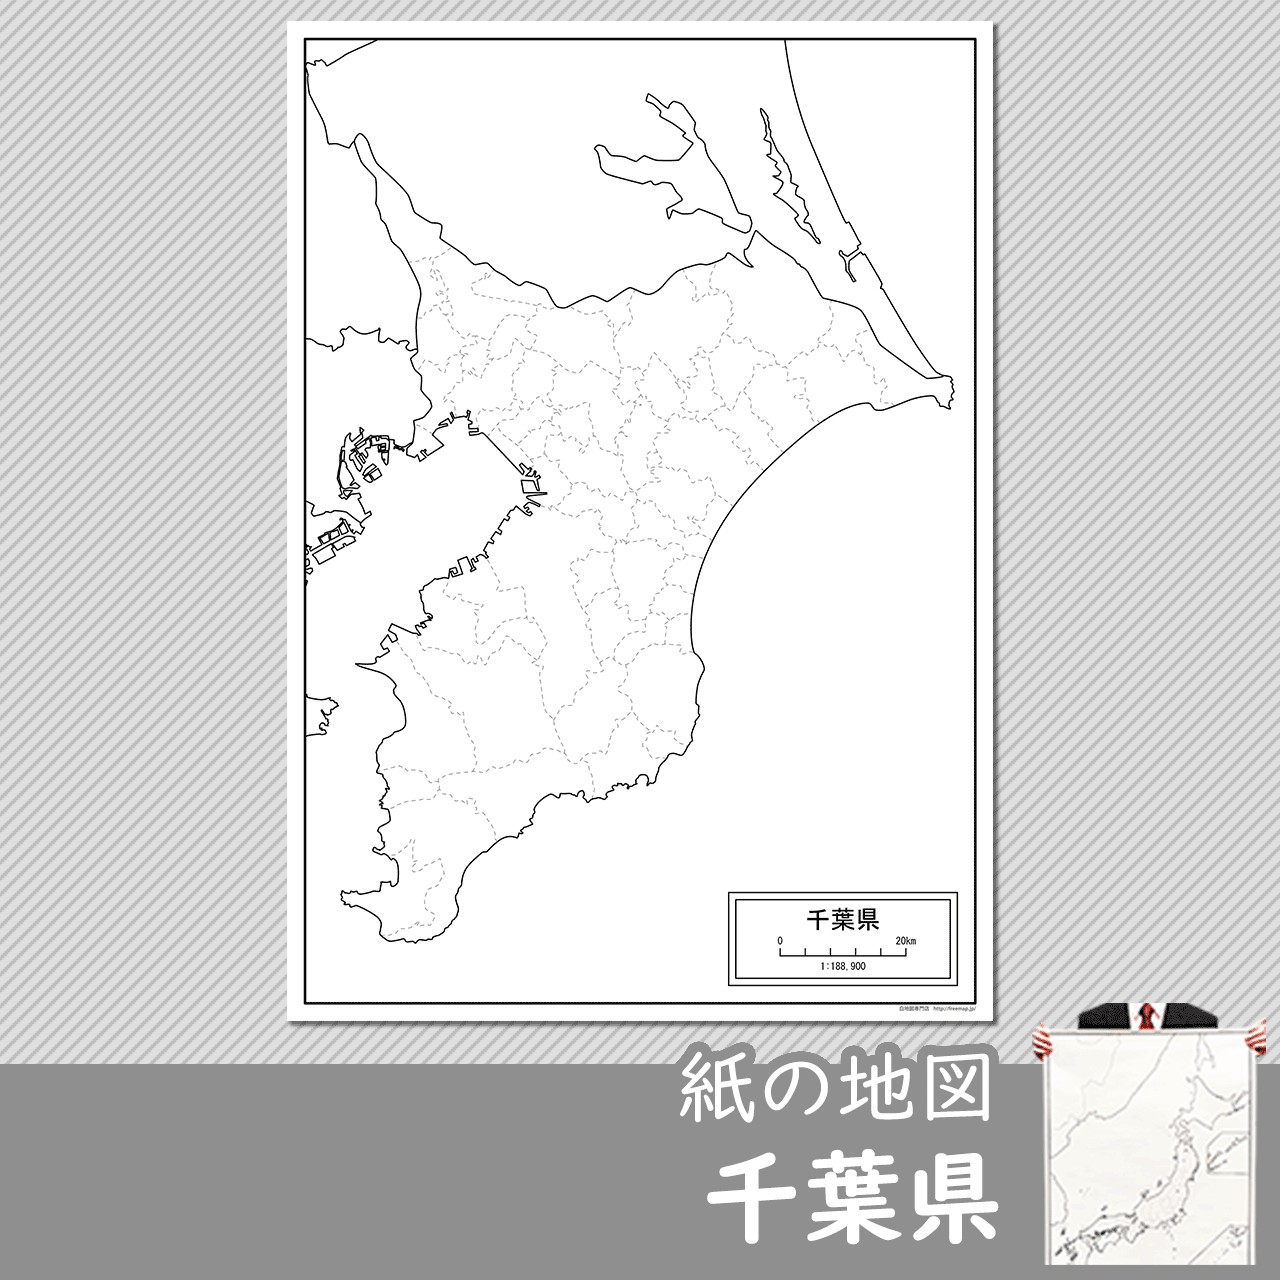 千葉県の紙の白地図のサムネイル